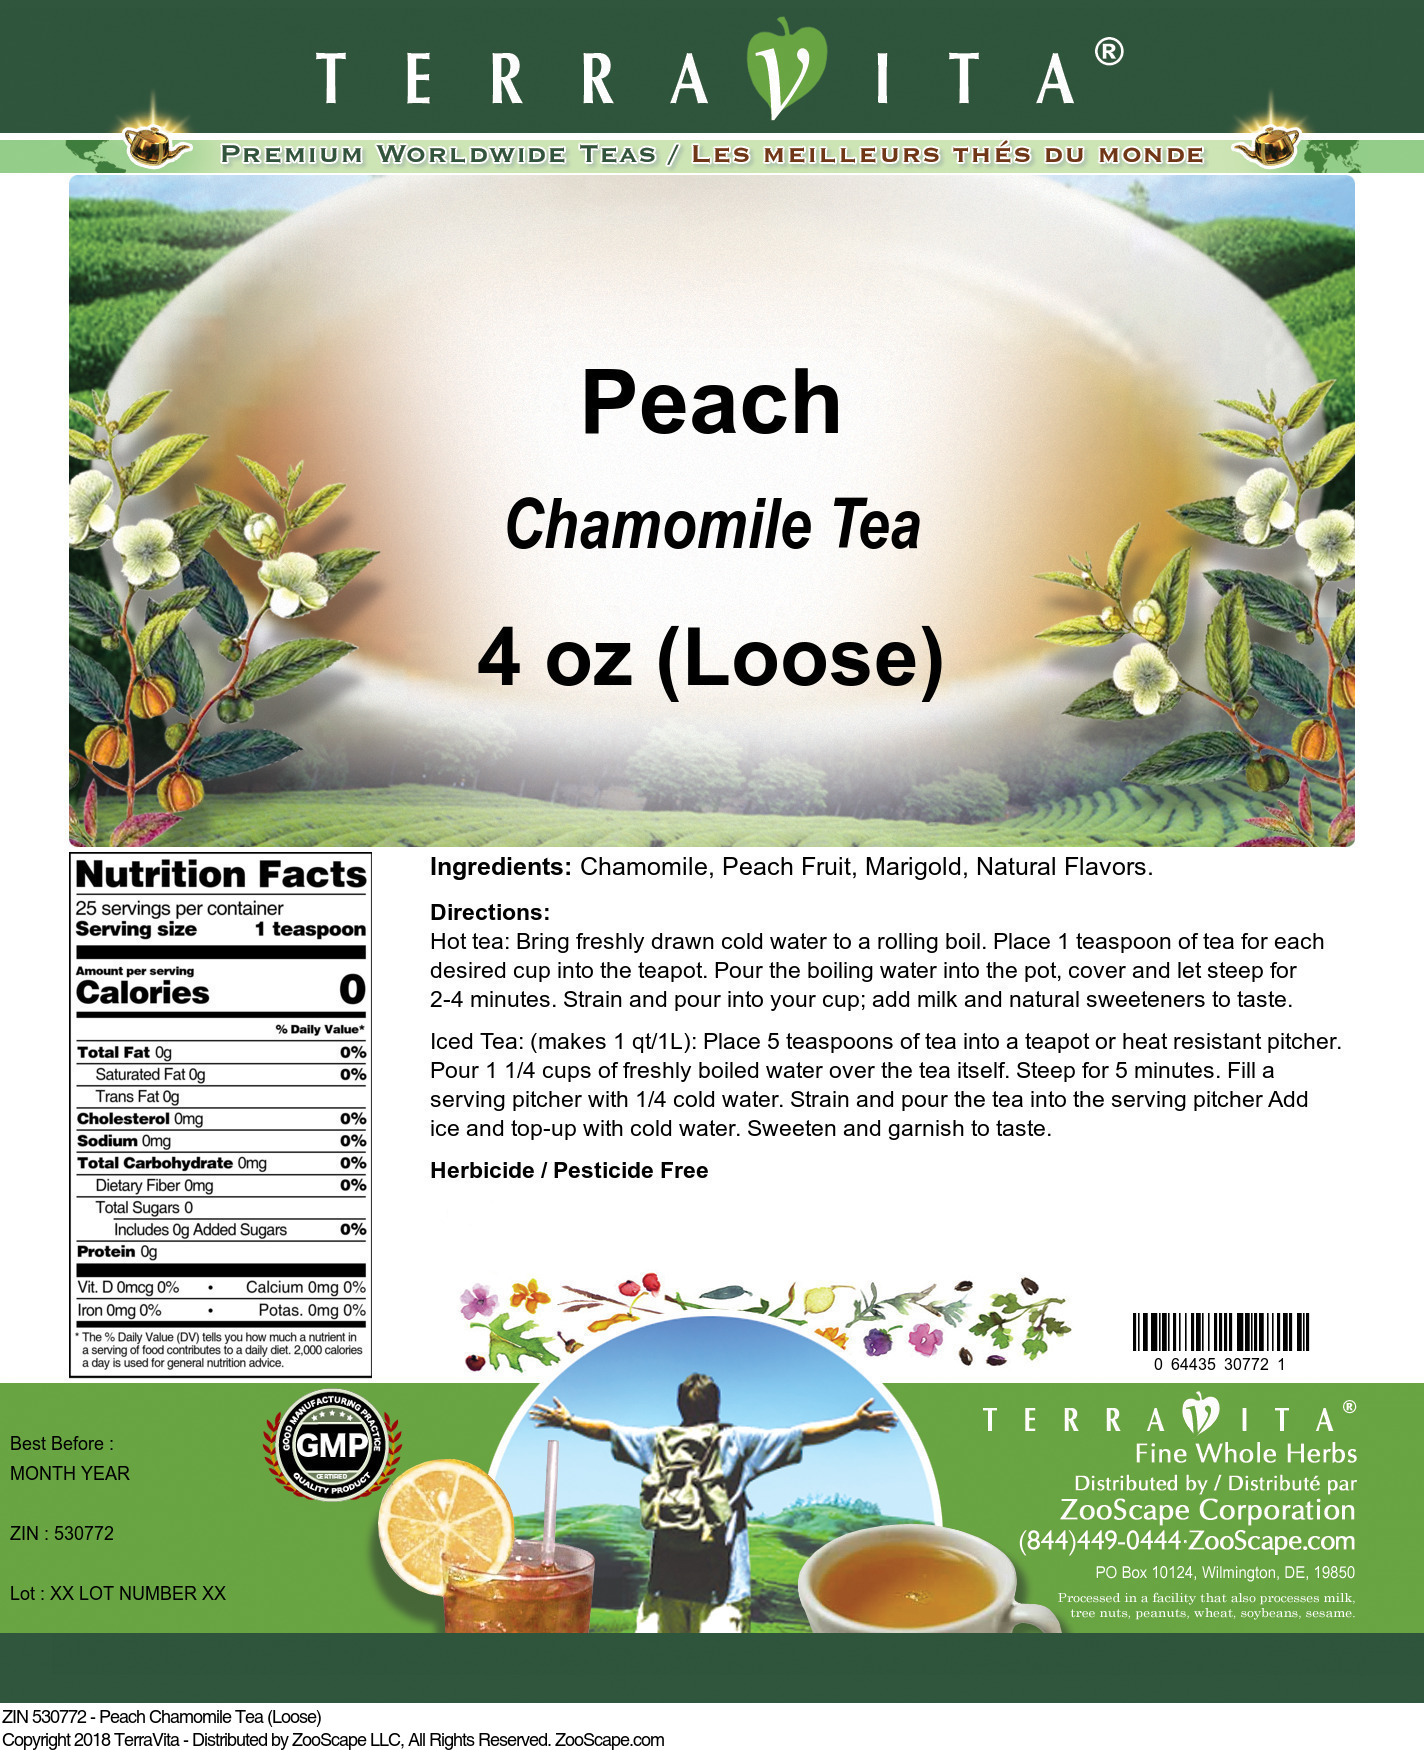 Peach Chamomile Tea (Loose) - Label